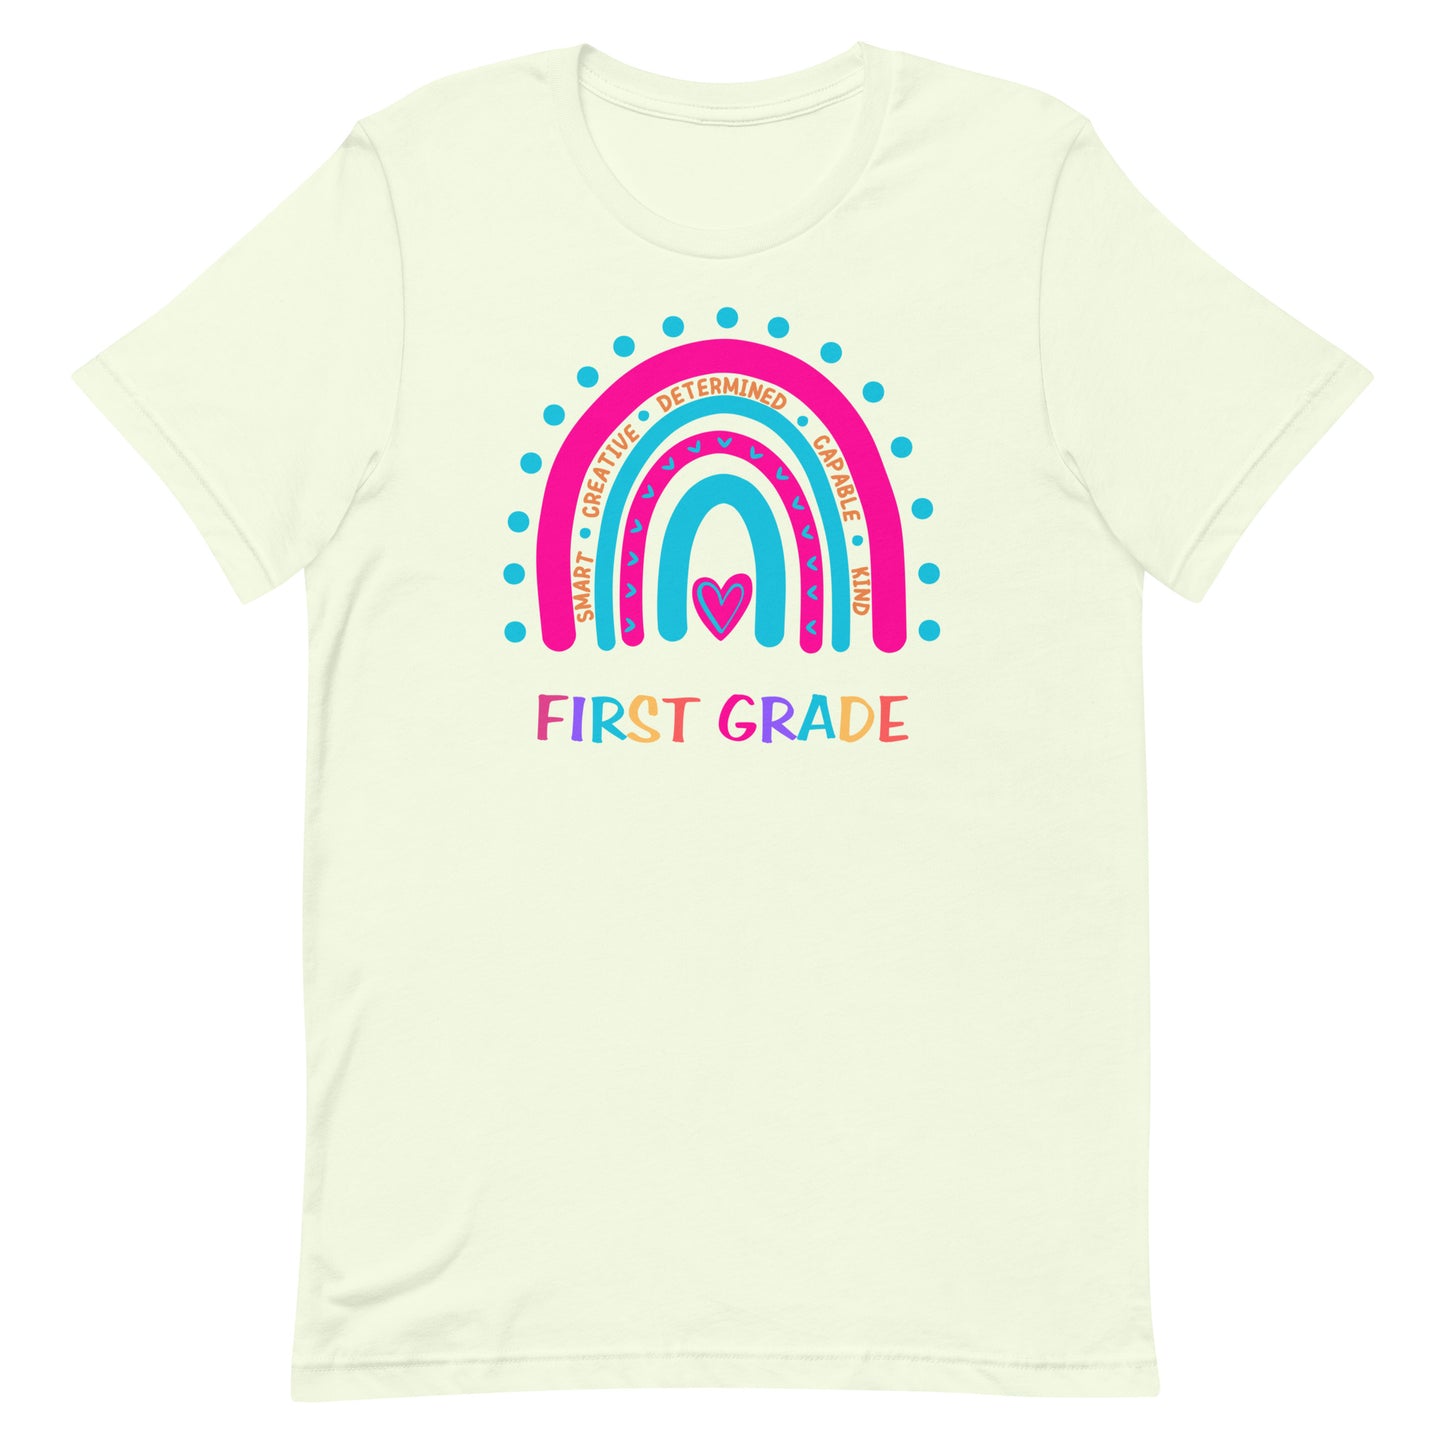 First Grade Affirmation T-shirt